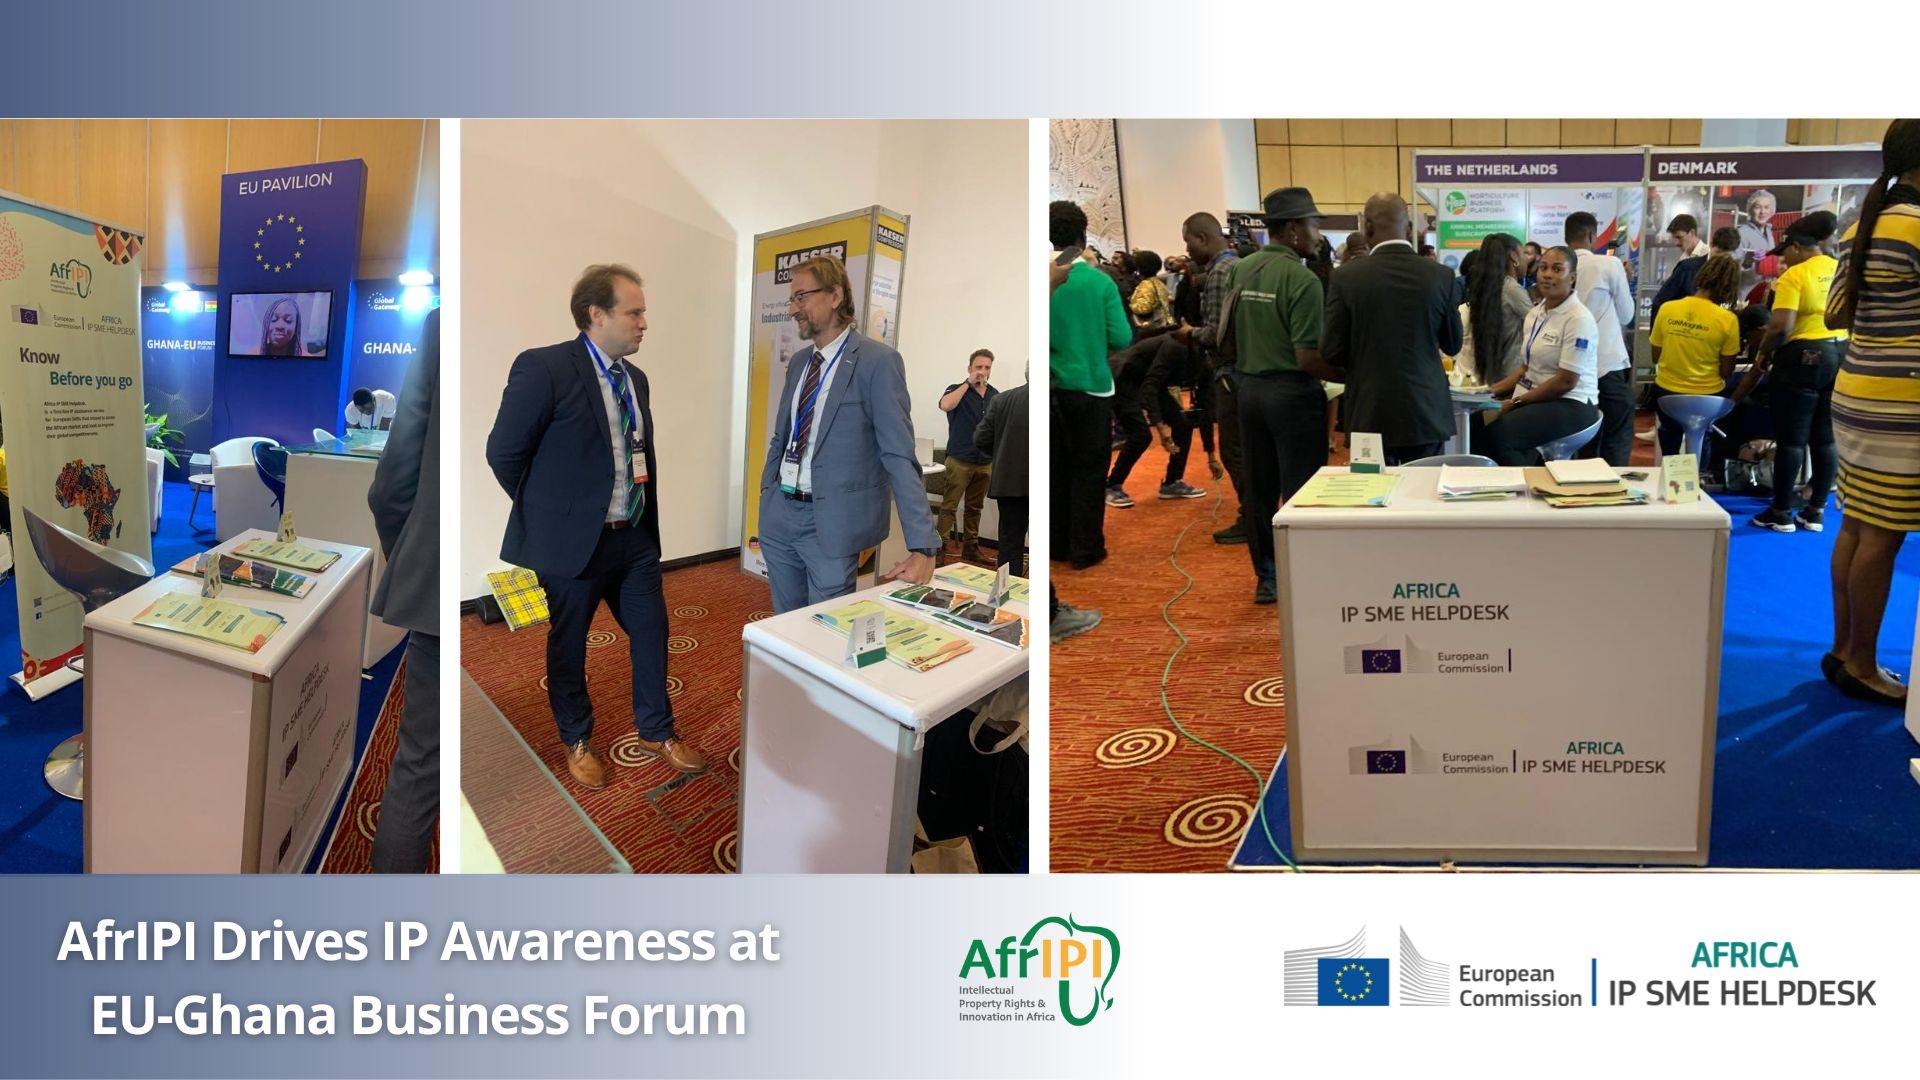 AfrIPI Drives IP Awareness at EU-Ghana Business Forum